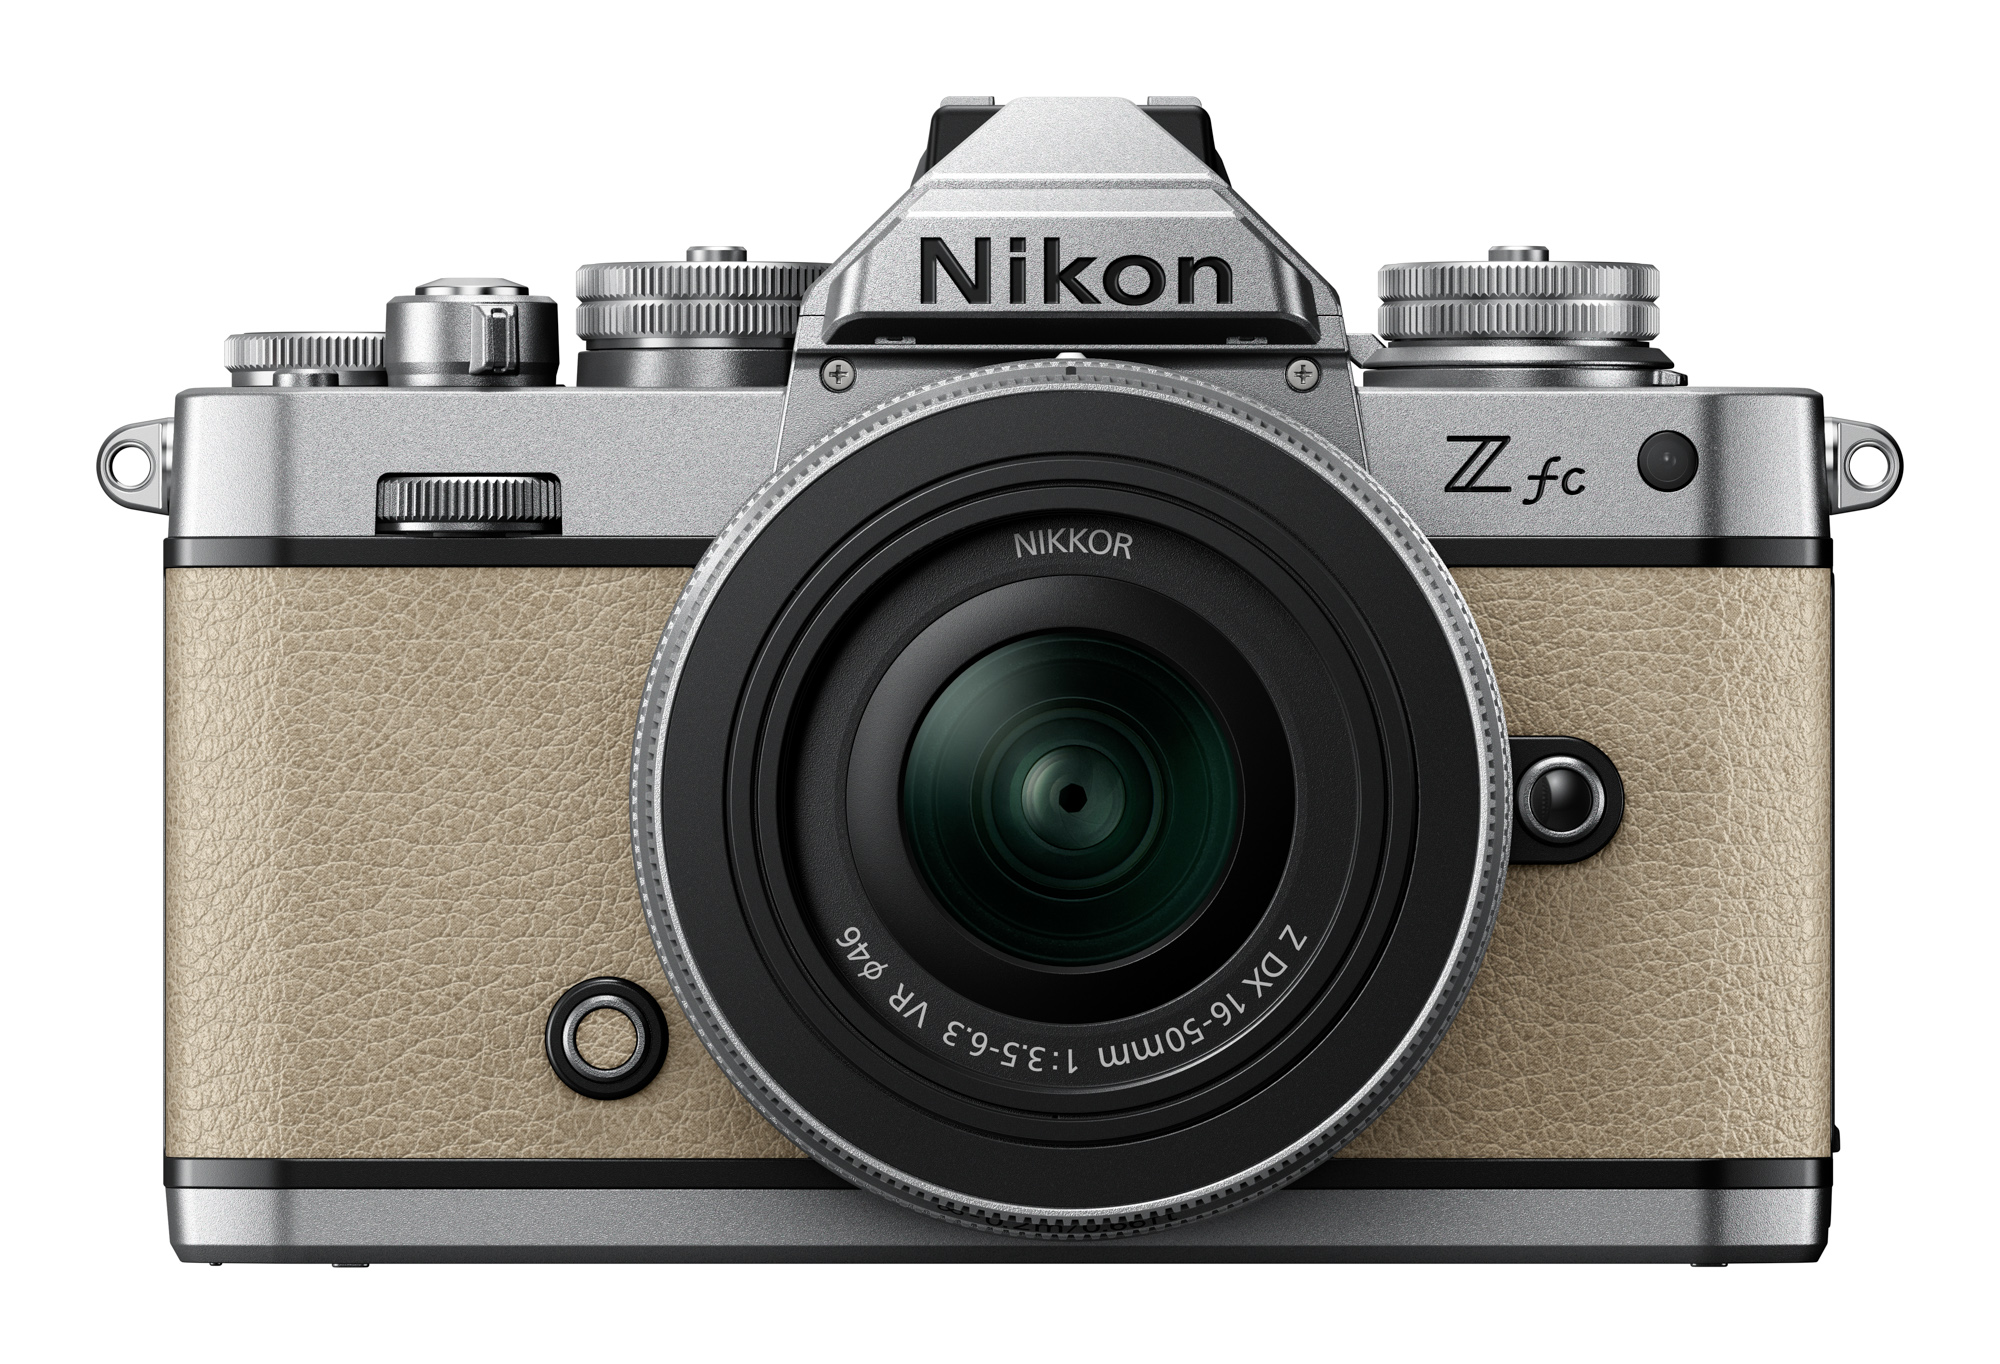 ニコンからクラシックなデザインのミラーレスカメラ登場、1982年発売